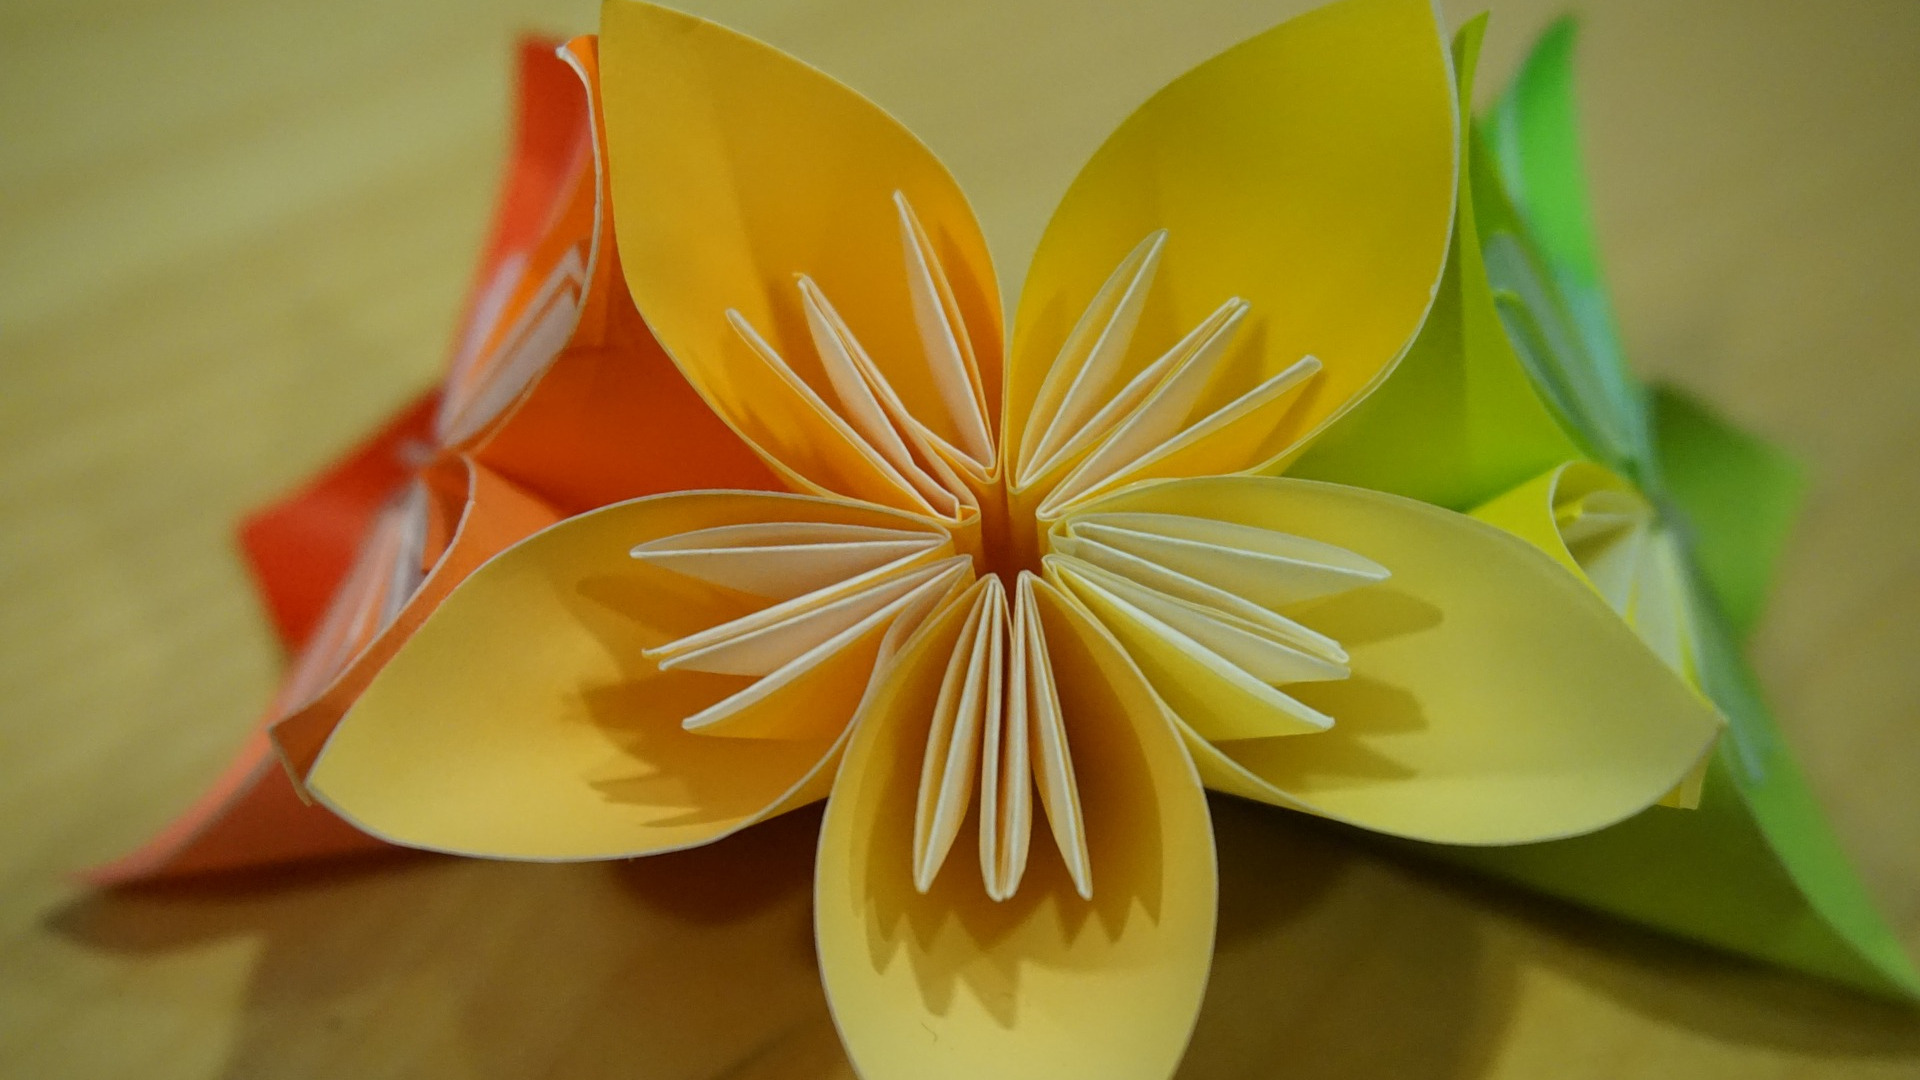 In Japan hat sich aus dem Falten von Papier eine wahre und weltweit bekannte Kunstform entwickelt – Origami. Durch die Falttechnik des Origami entstand dieses schöne Blüten-Arrangement.